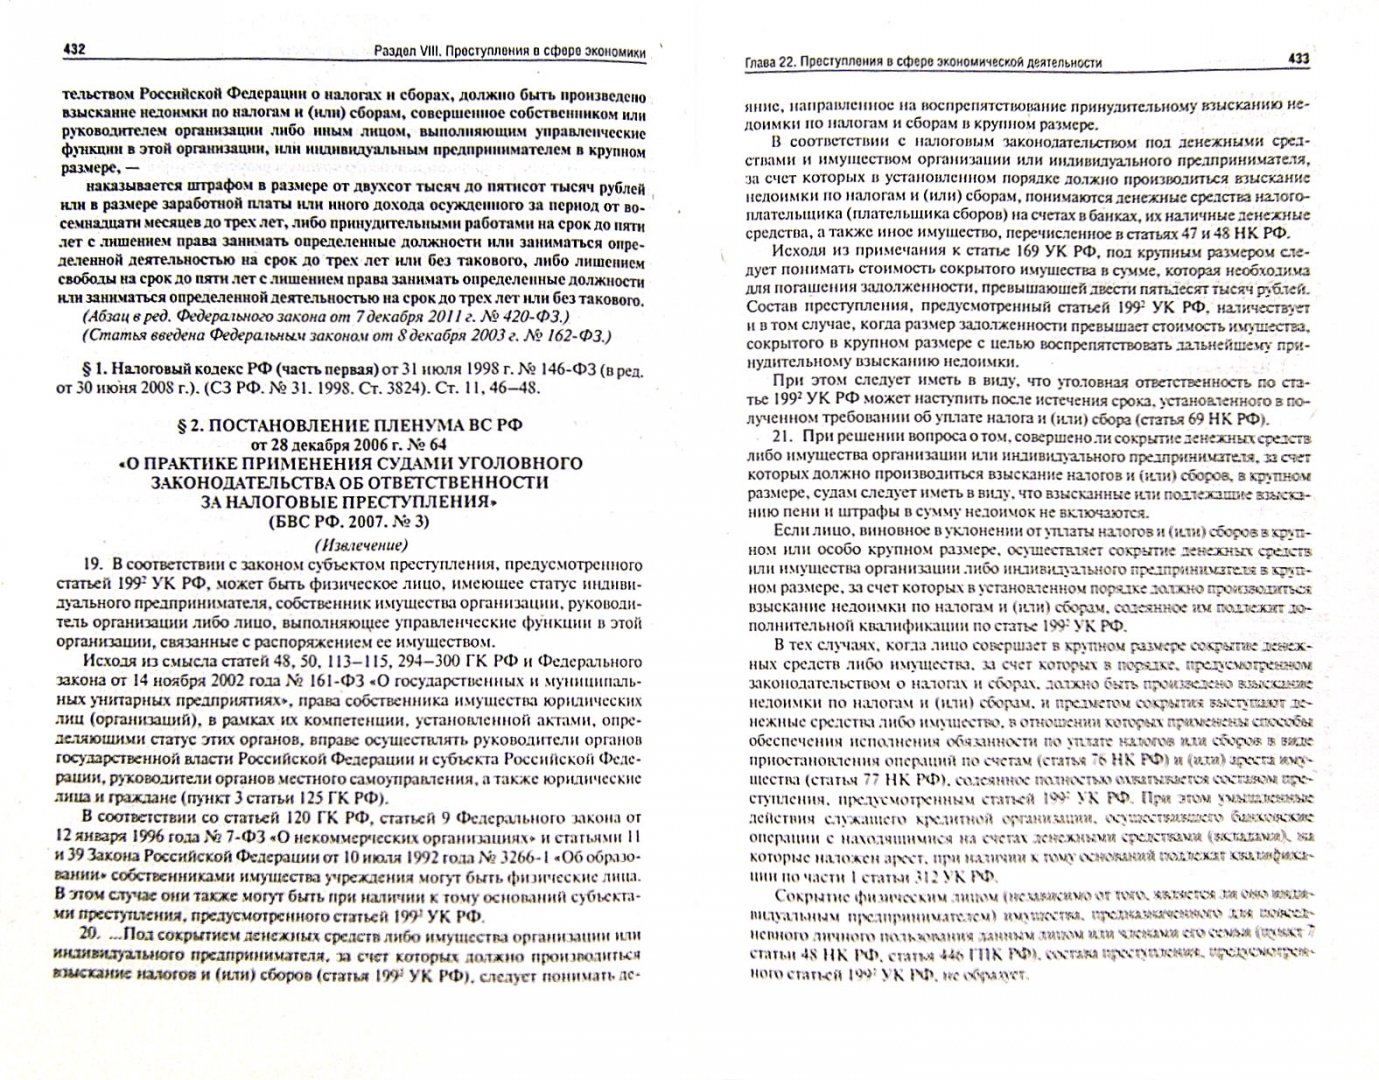 Иллюстрация 1 из 3 для Уголовный кодекс Российской Федерации с постатейными материалами | Лабиринт - книги. Источник: Лабиринт